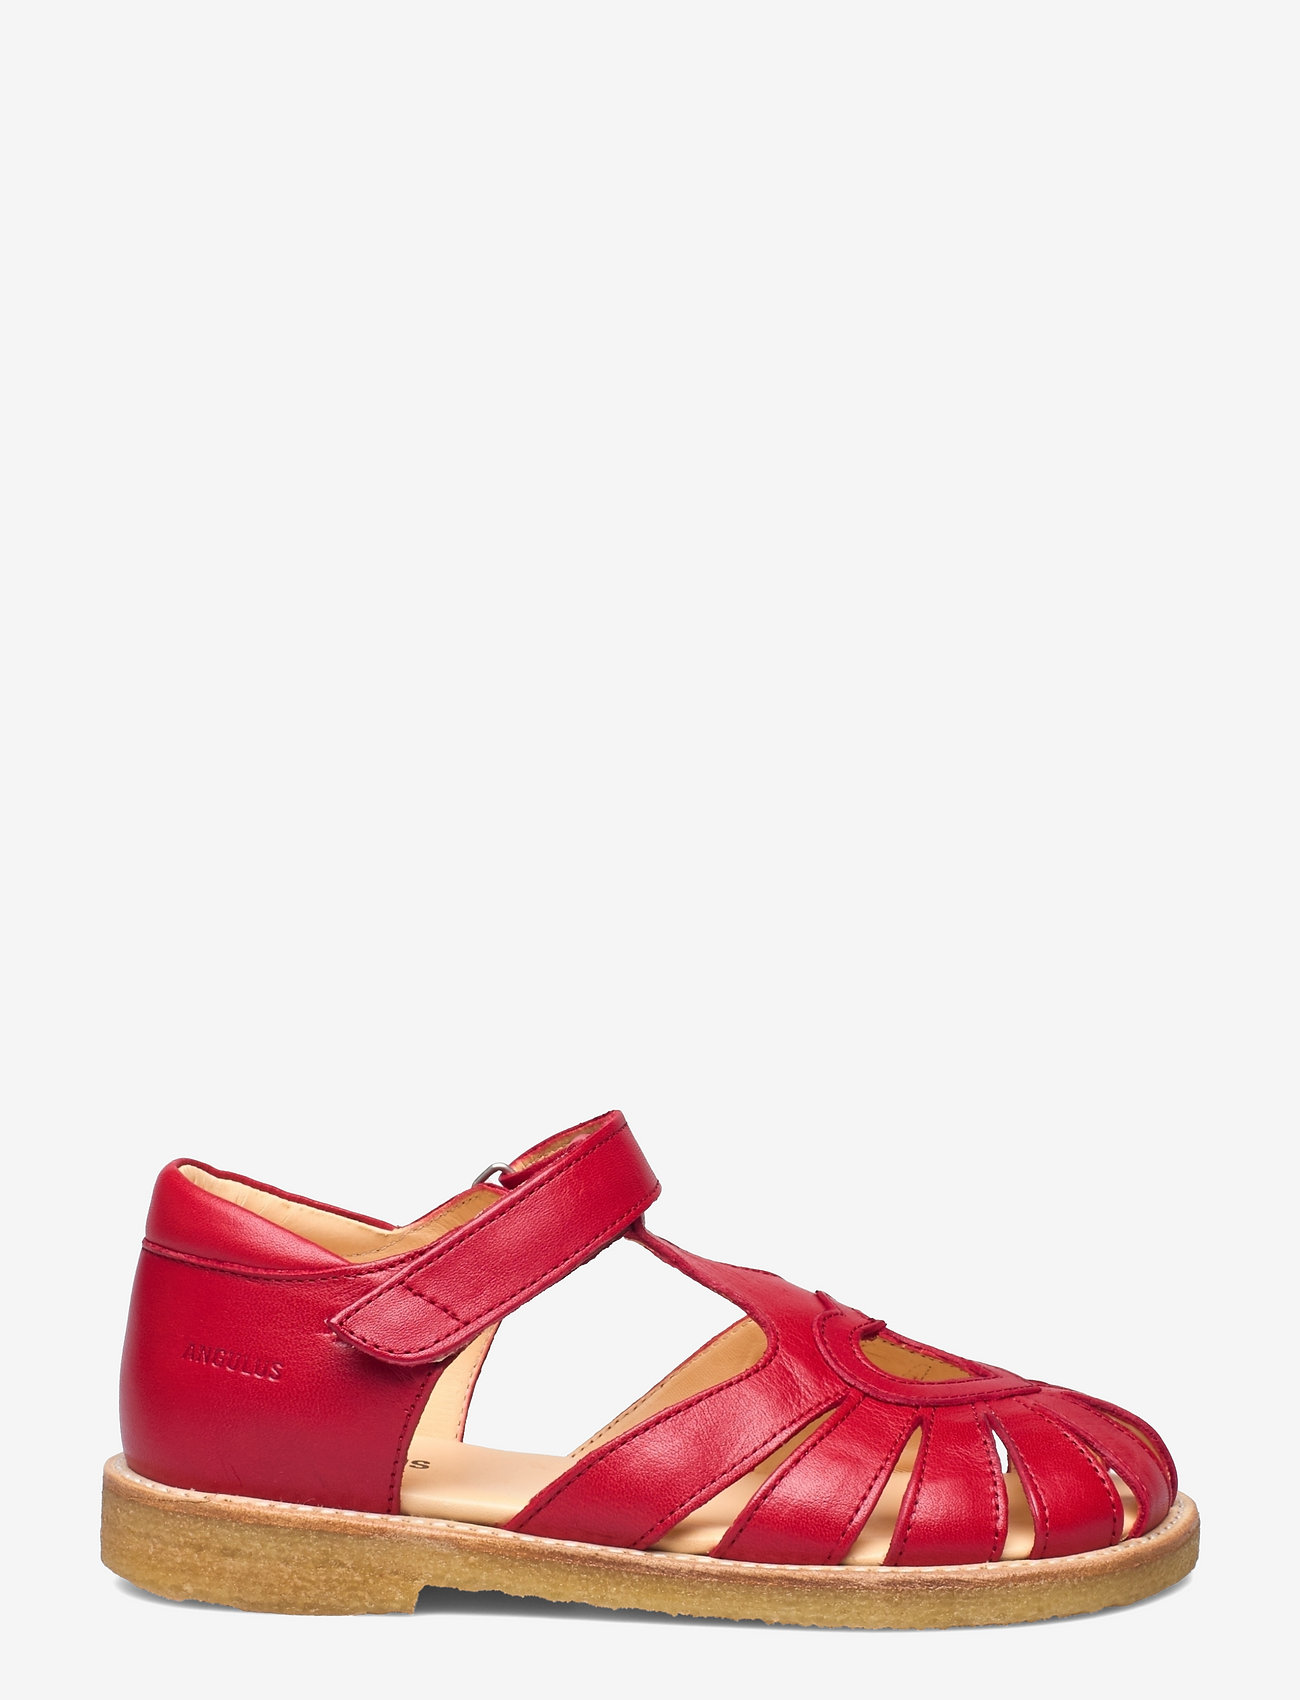 ANGULUS - Sandals - flat - closed toe -  - sandaler med rem - 1412 red - 1